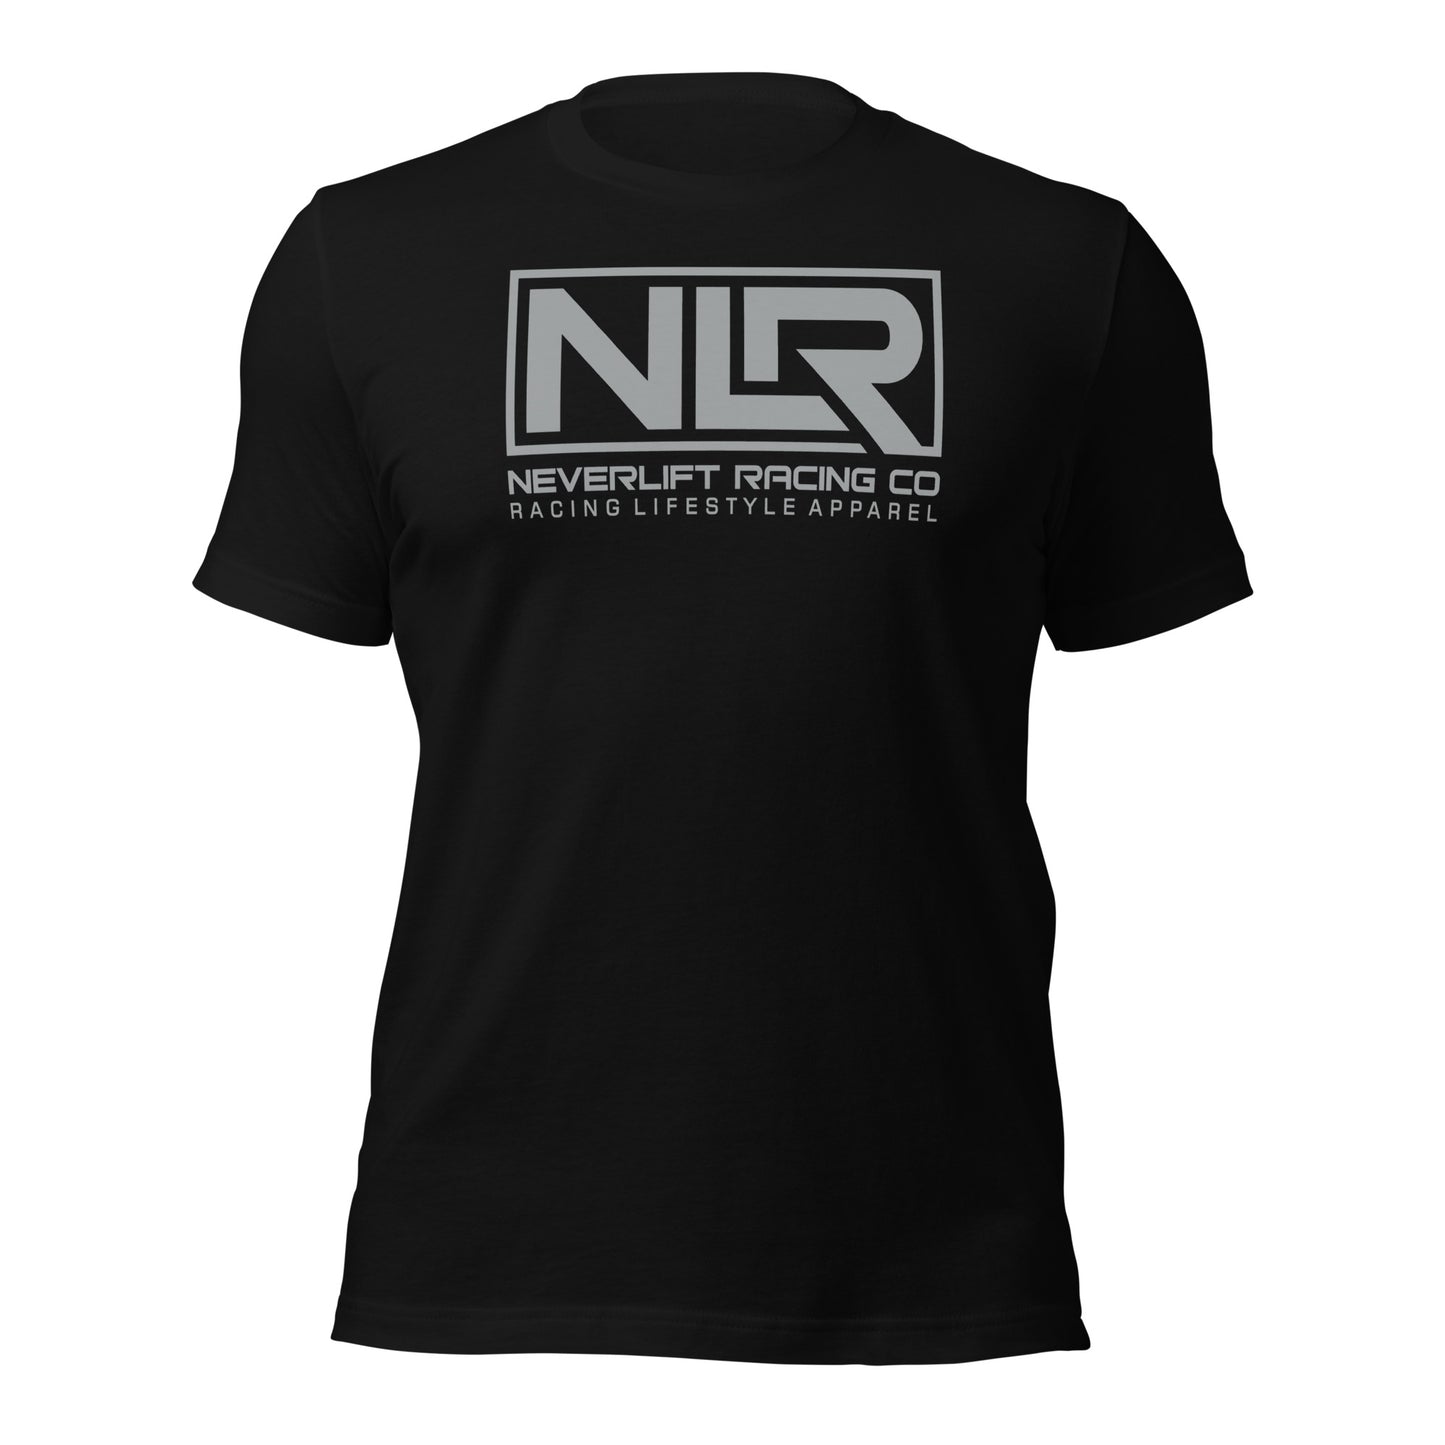 Team NLR t-shirt